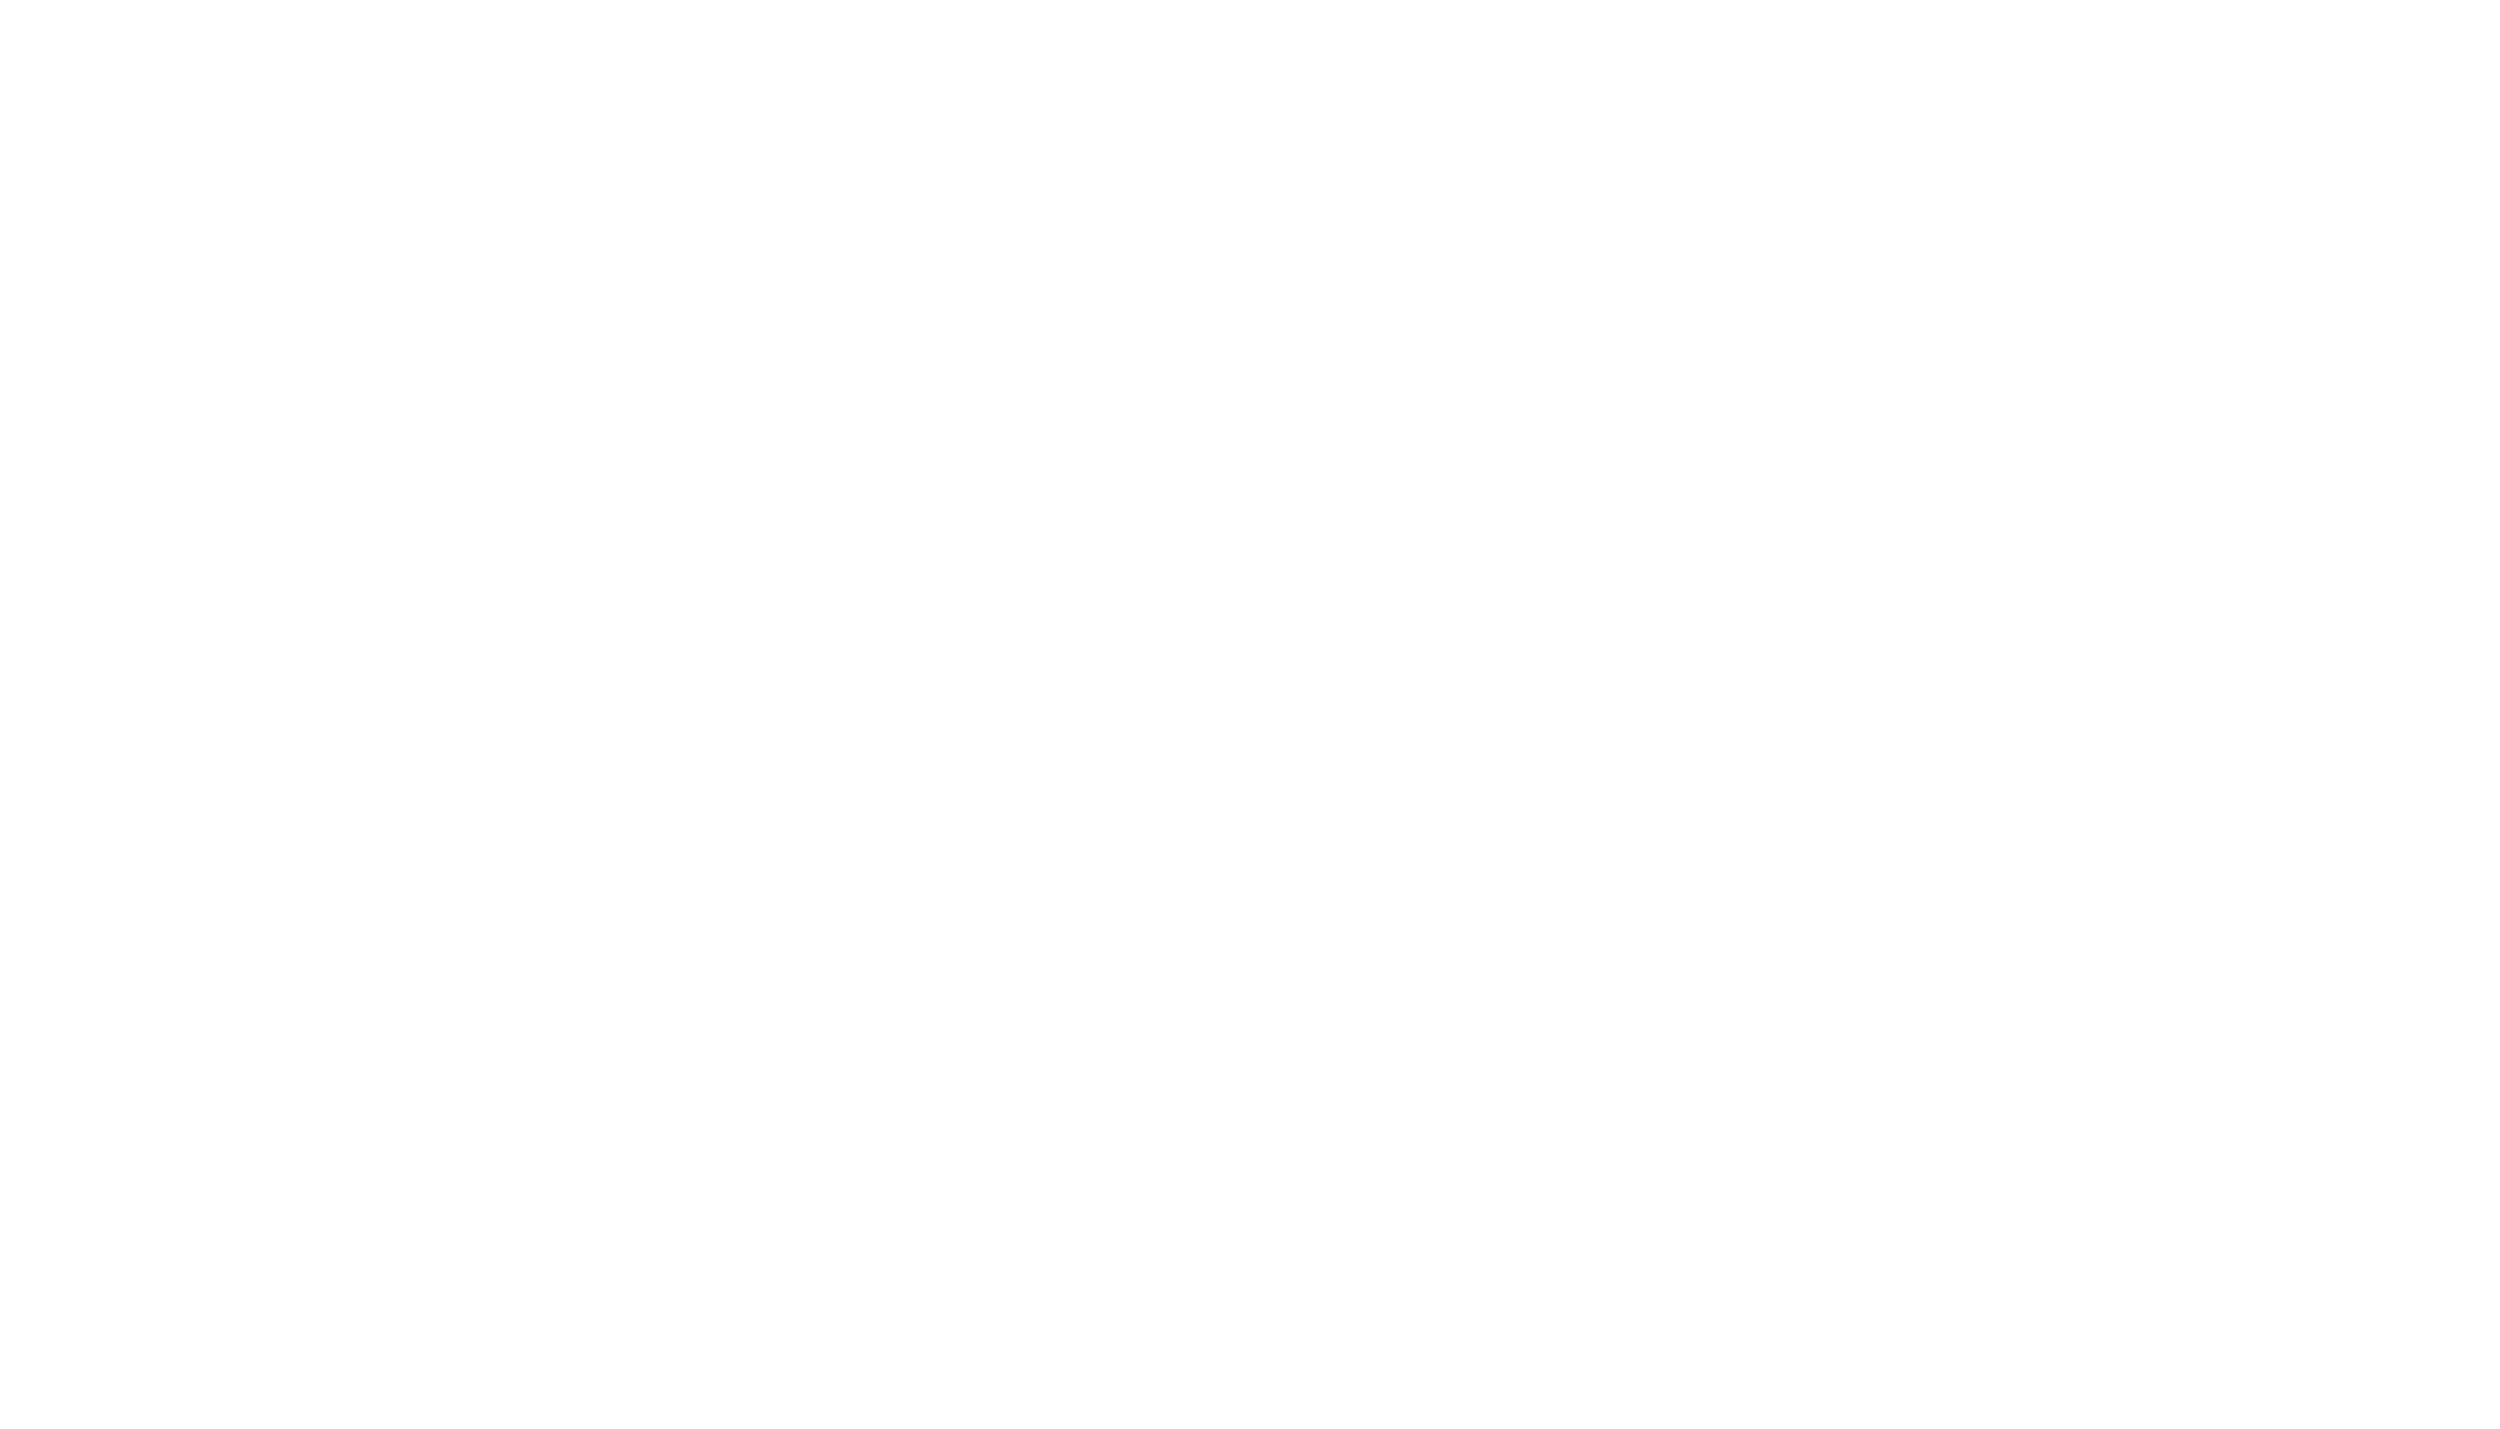 Hannah Ziegeler